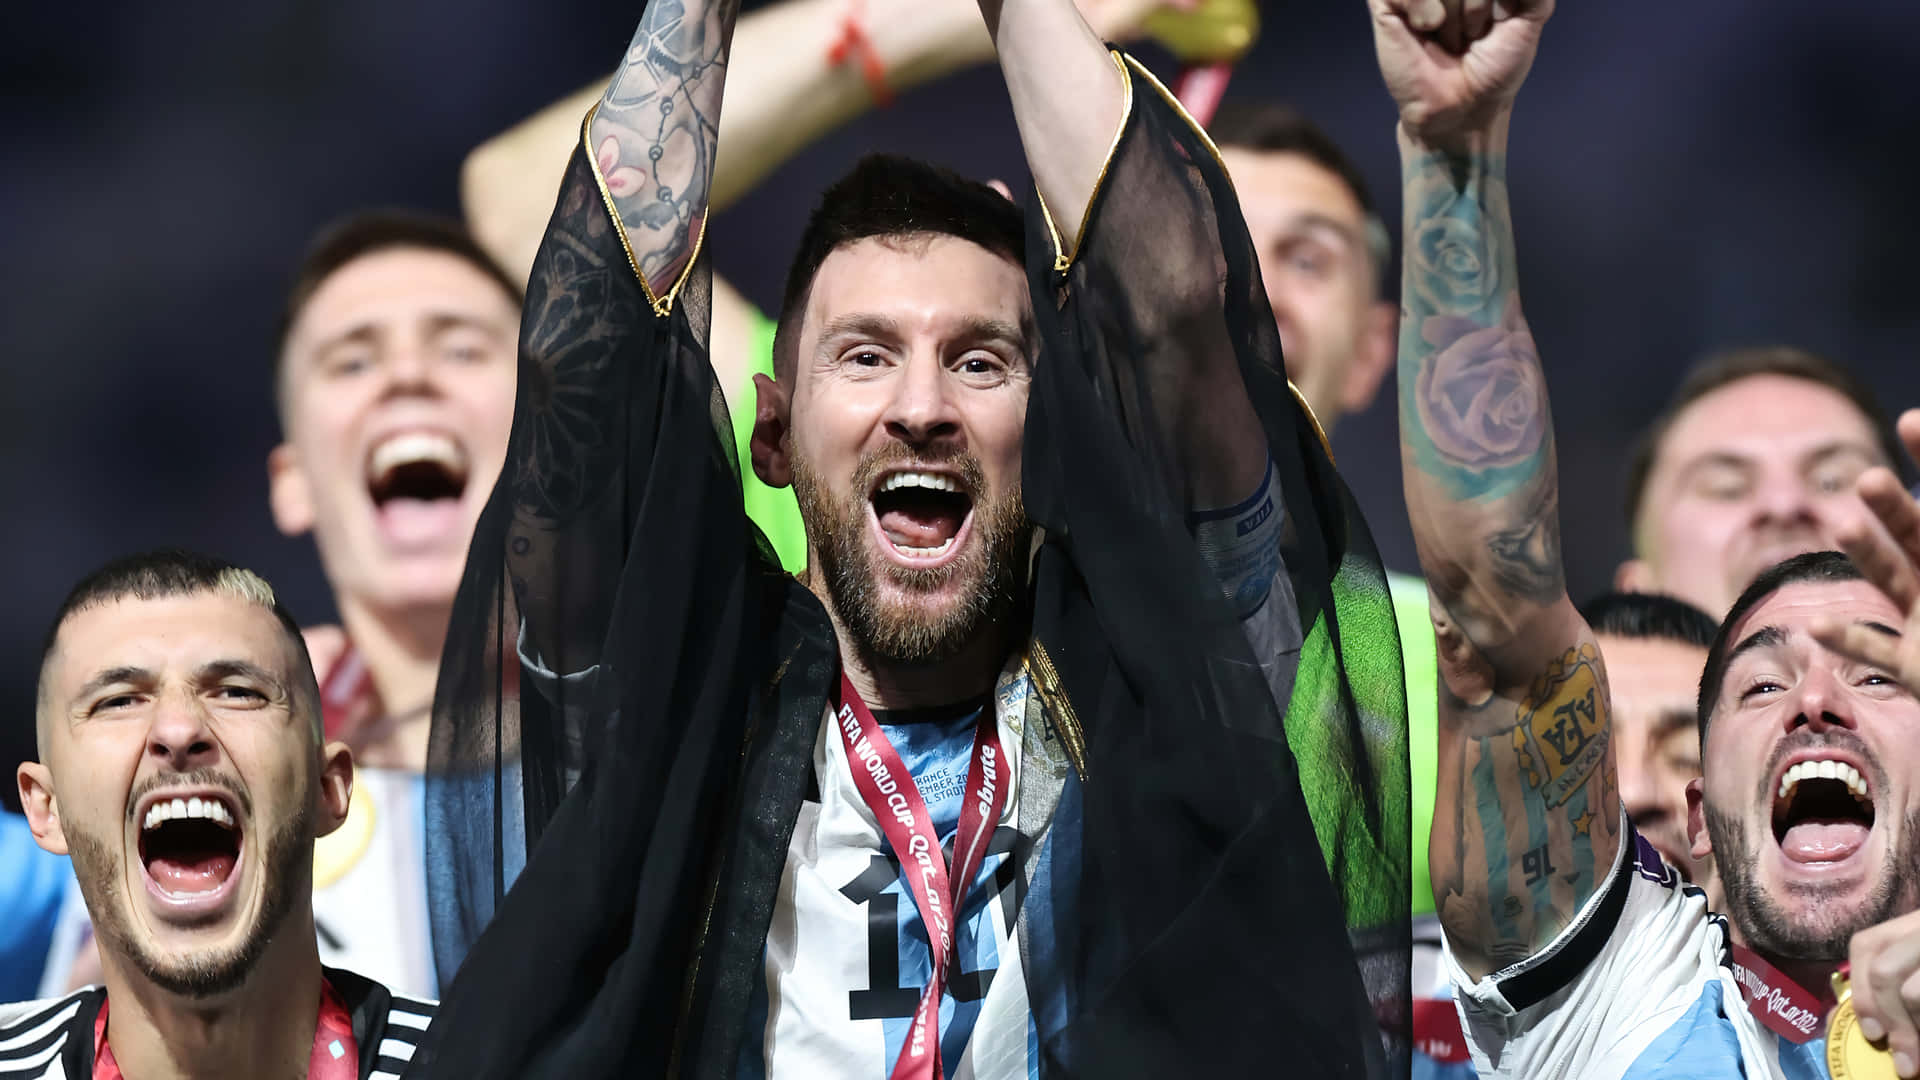 Enfantastisk Øjeblik For Fodbold Superstjernen Lionel Messi, Som Fejrer Sin Sejr Under En Fodboldkamp.